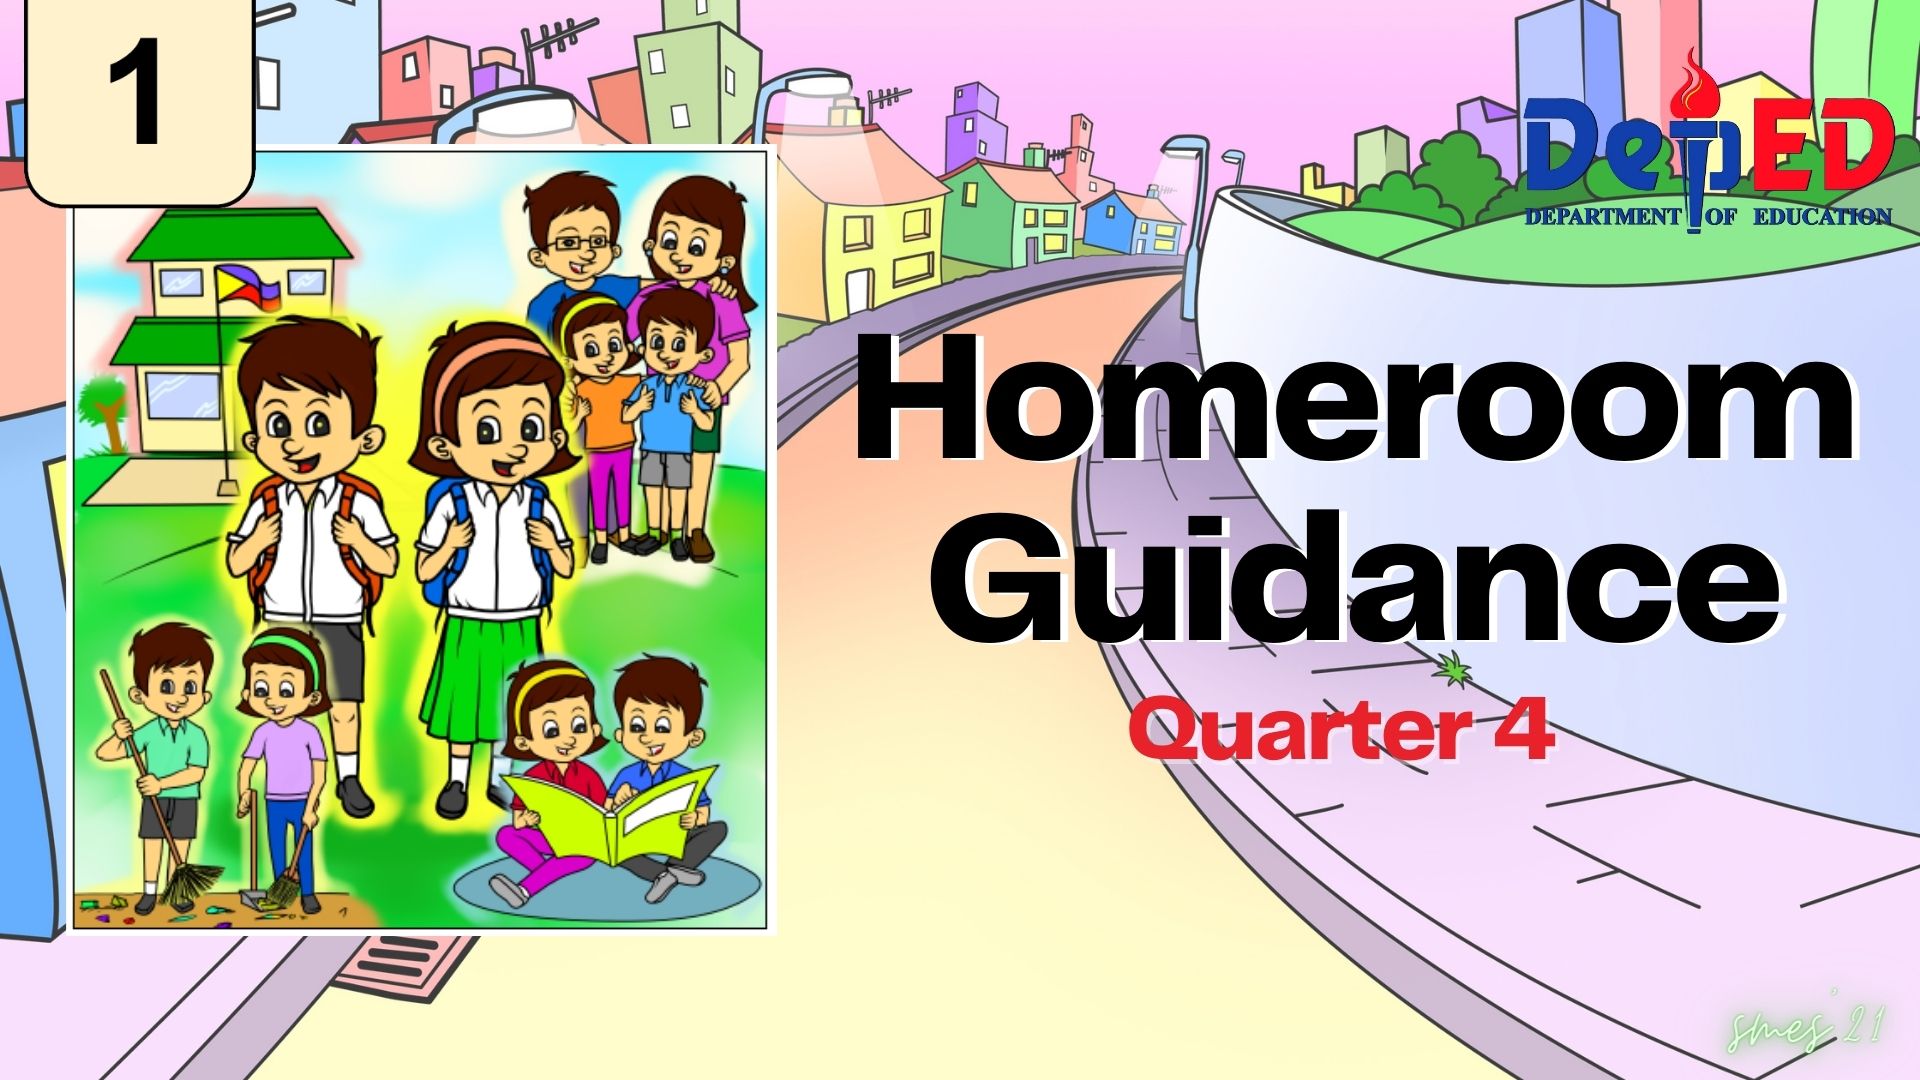 G1 - Homeroom Guidance Quarter 4 